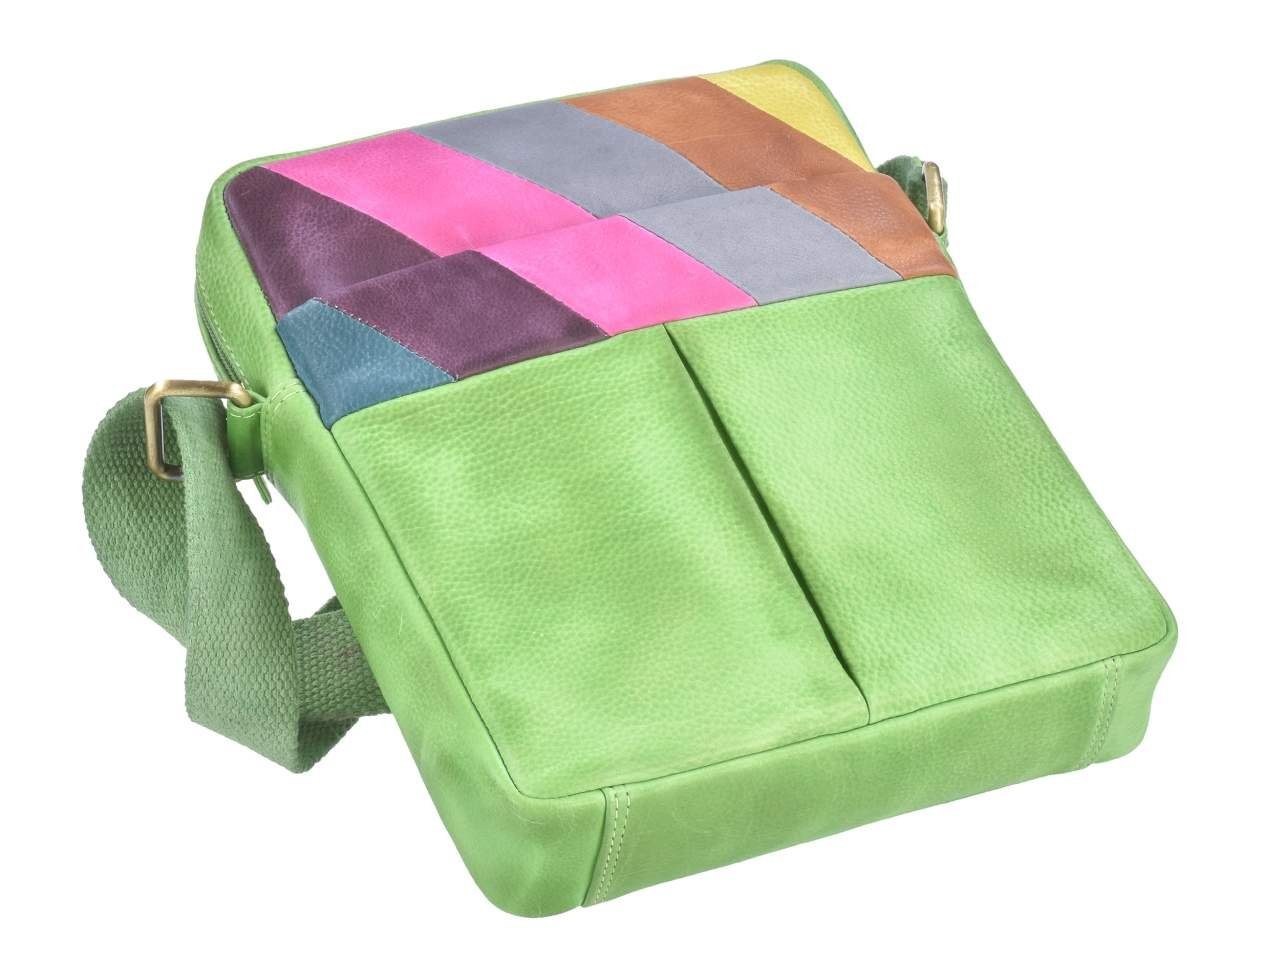 Handtasche, Candy 22x27cm, Shop, forest/multi bunt, Umhängetasche Schultertasche, Muster buntes Greenburry